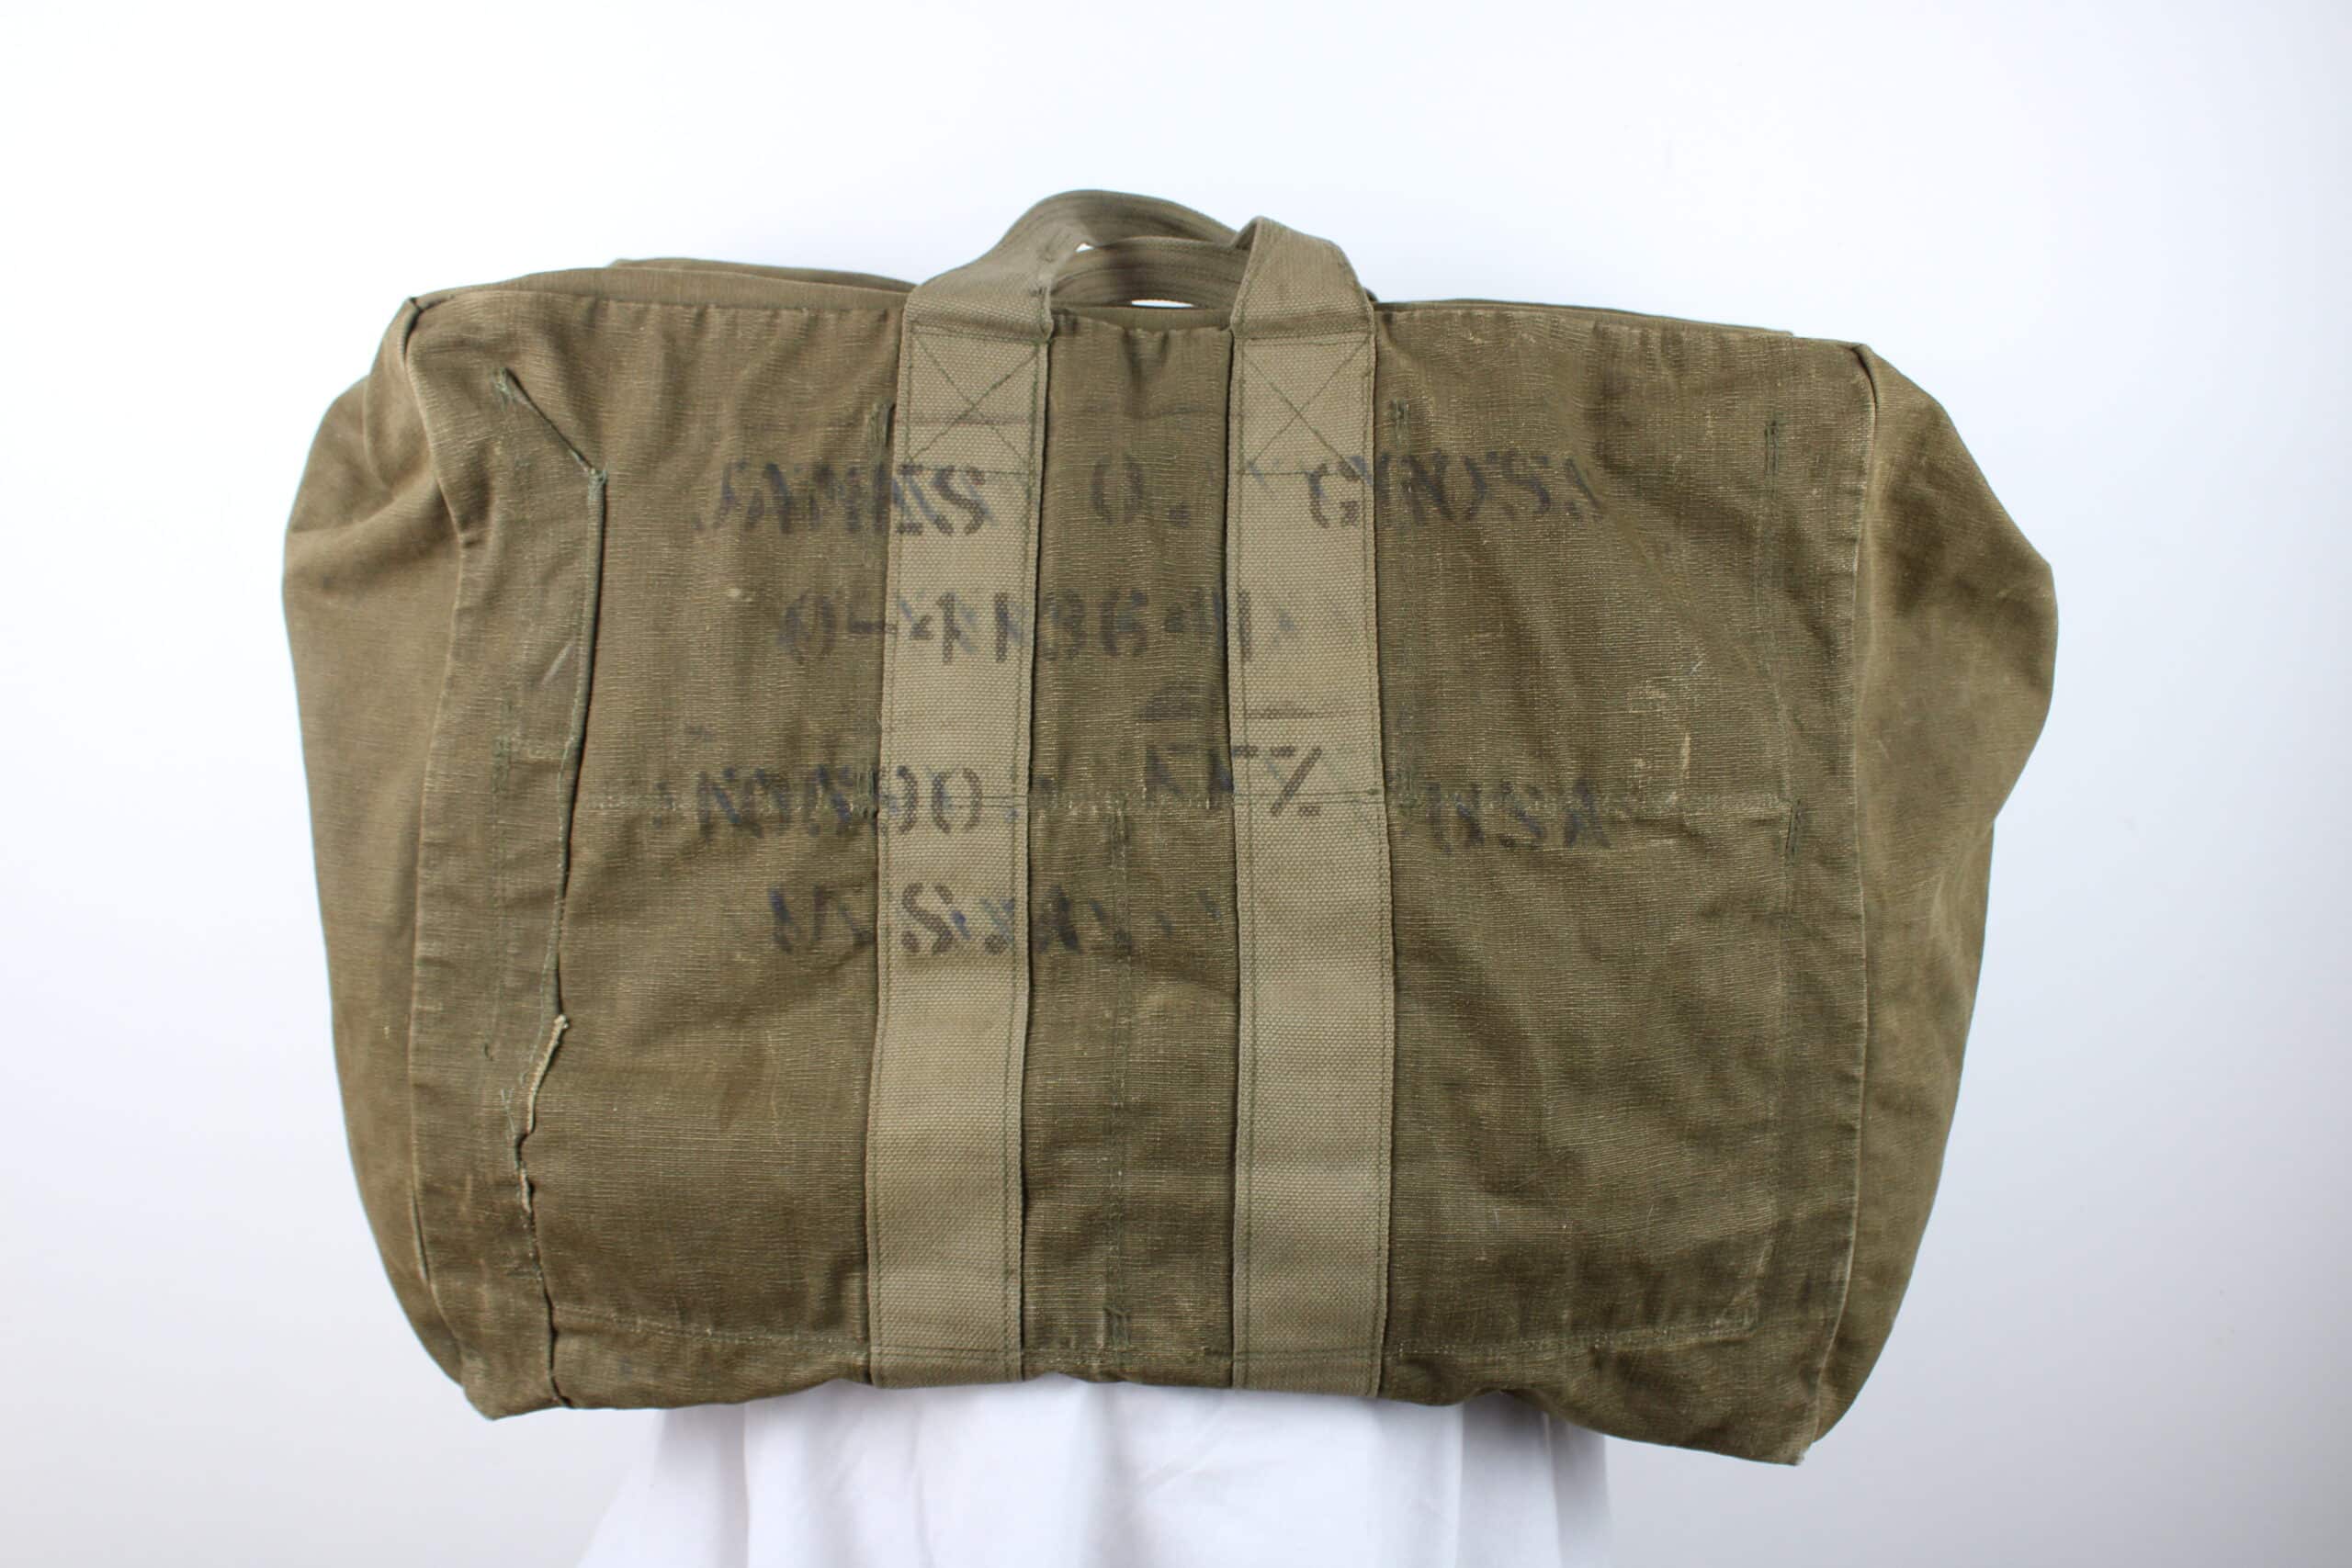 Aviator Kit Bag nominatif James O Gross 8th Air Force B17 